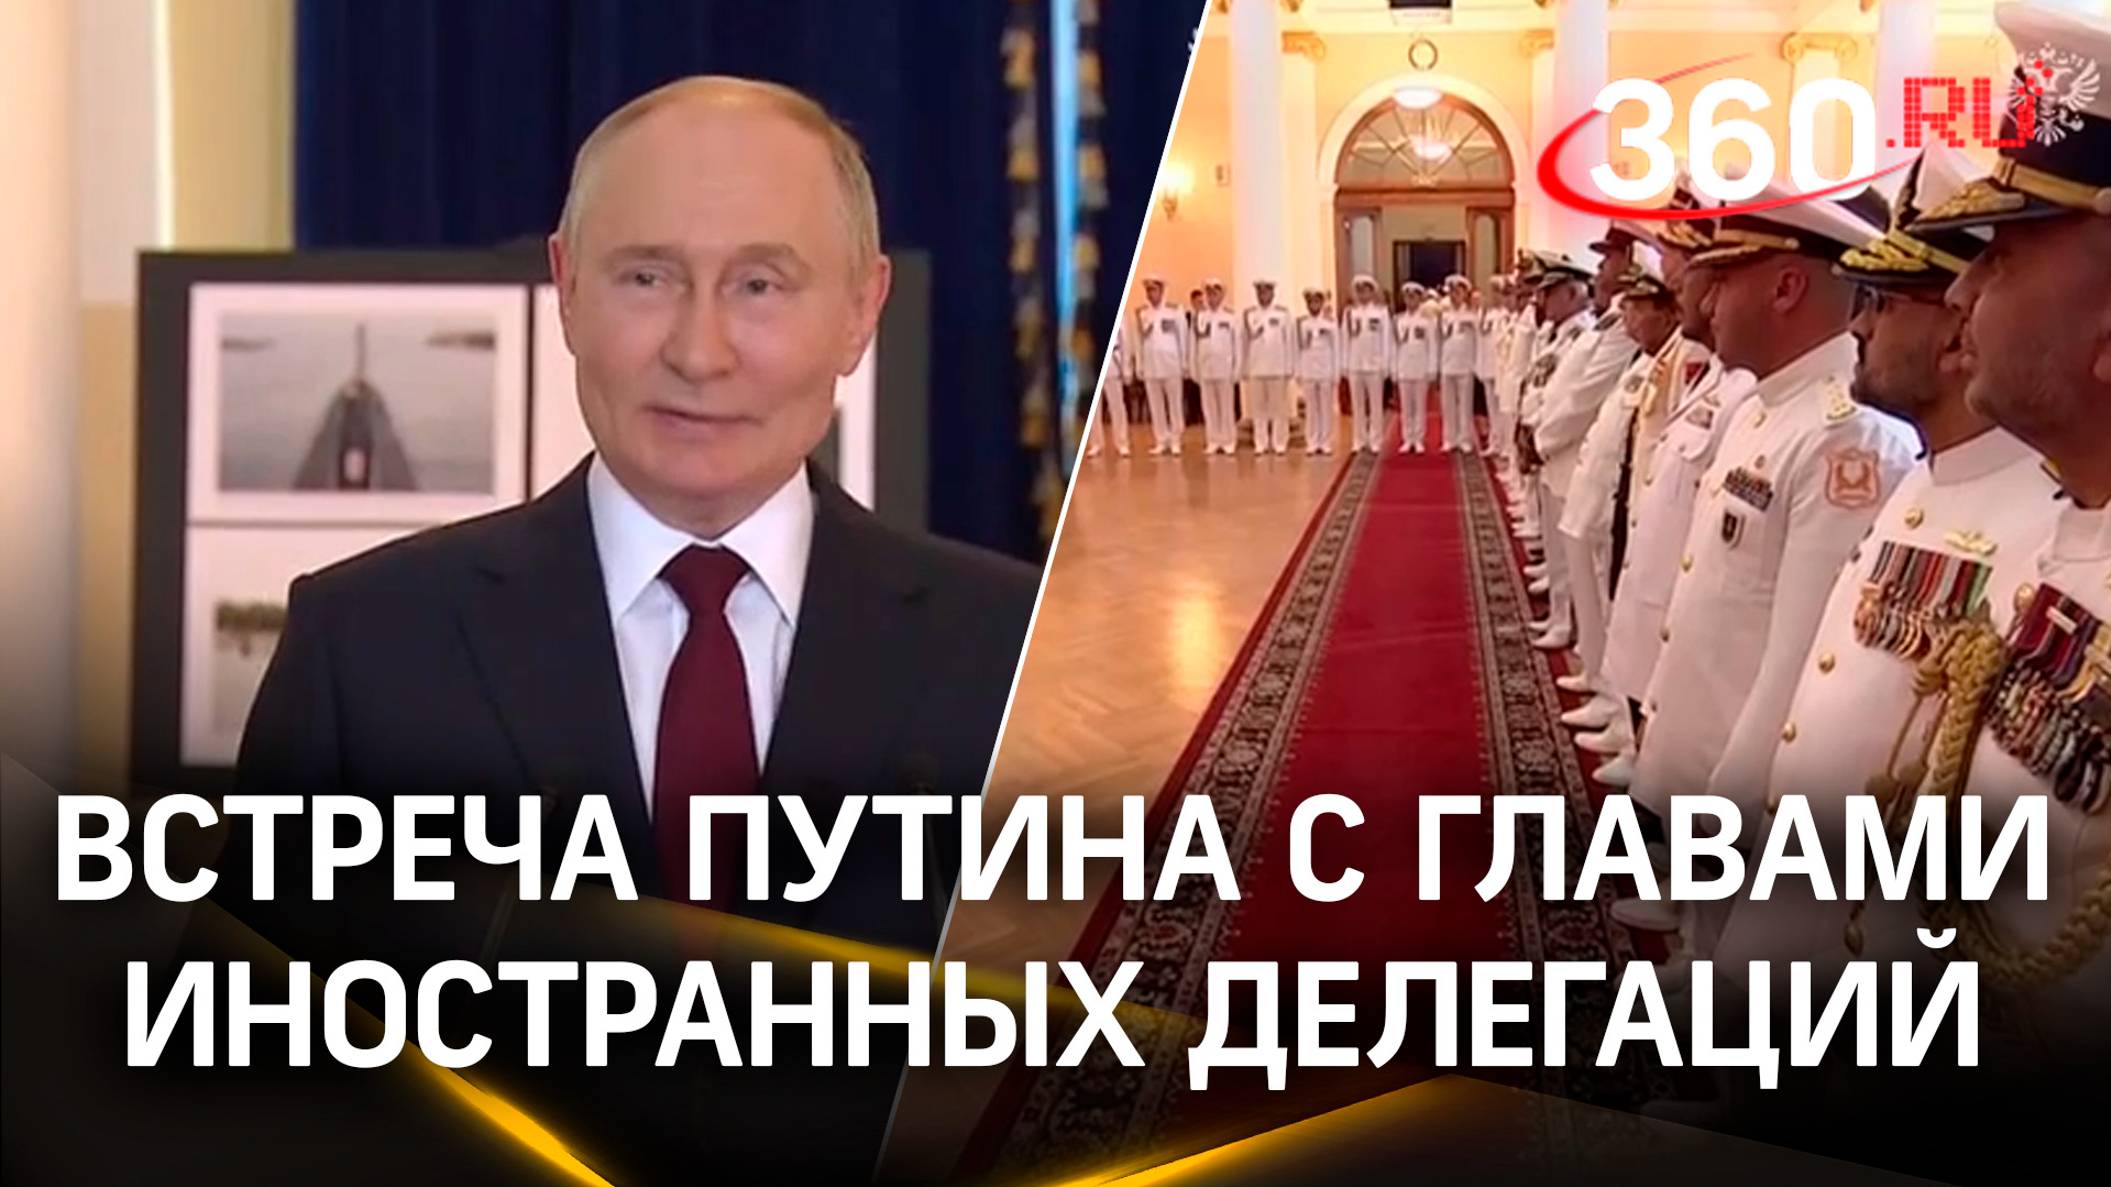 Путин на День ВМФ встретился с главами иностранных делегаций. Петербург